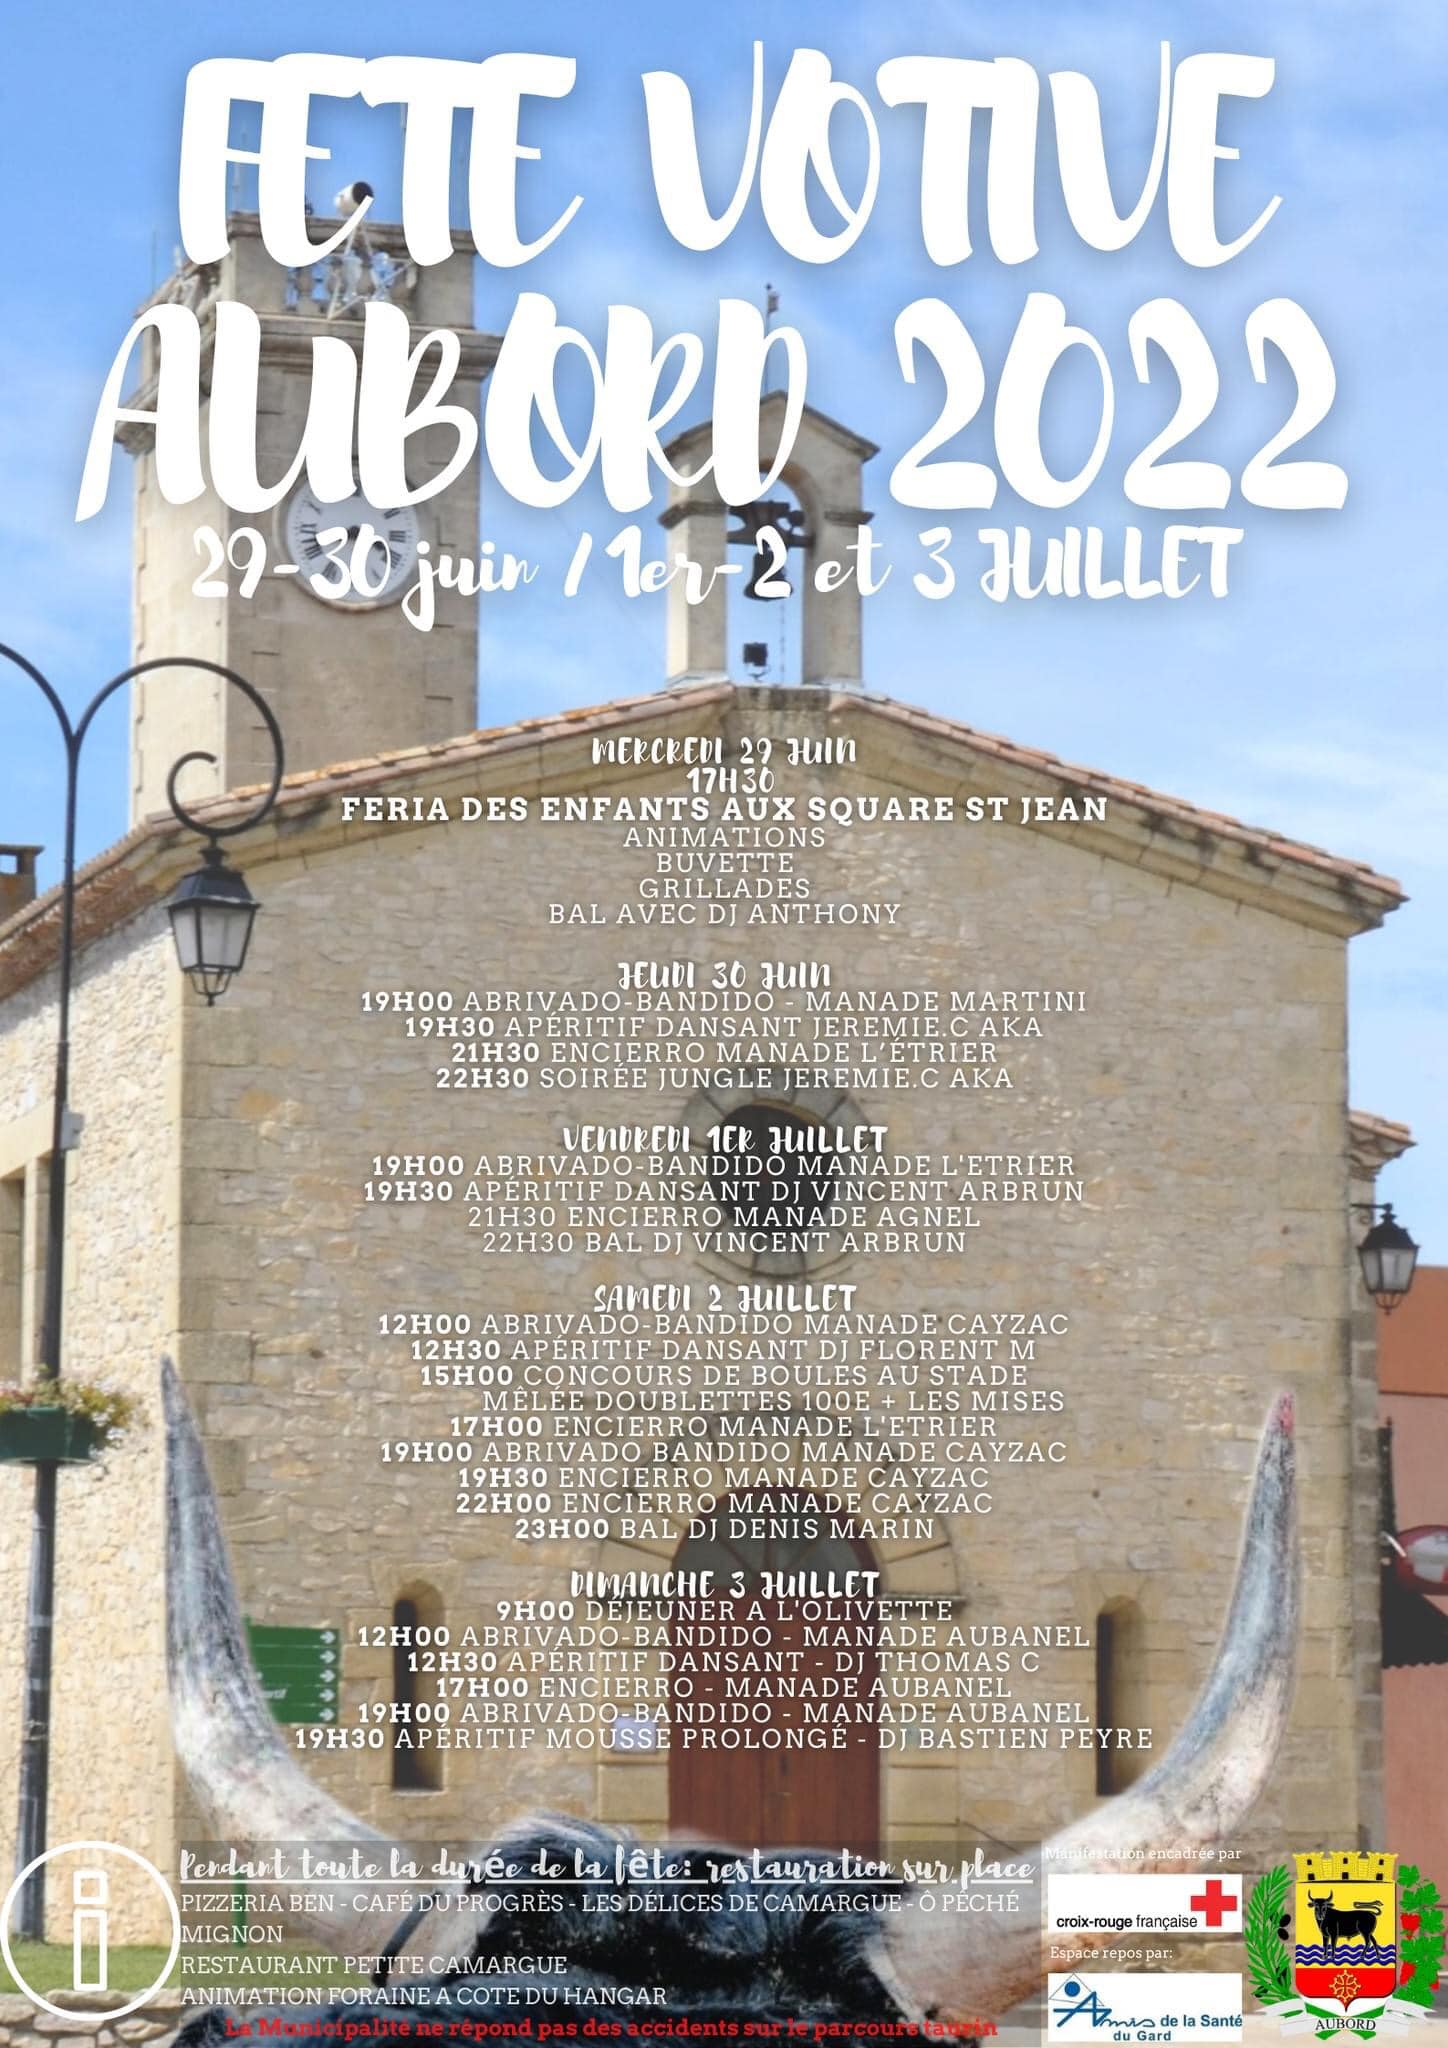 Fete votive à Aubord - Du 29 juin au 03 juillet 2022